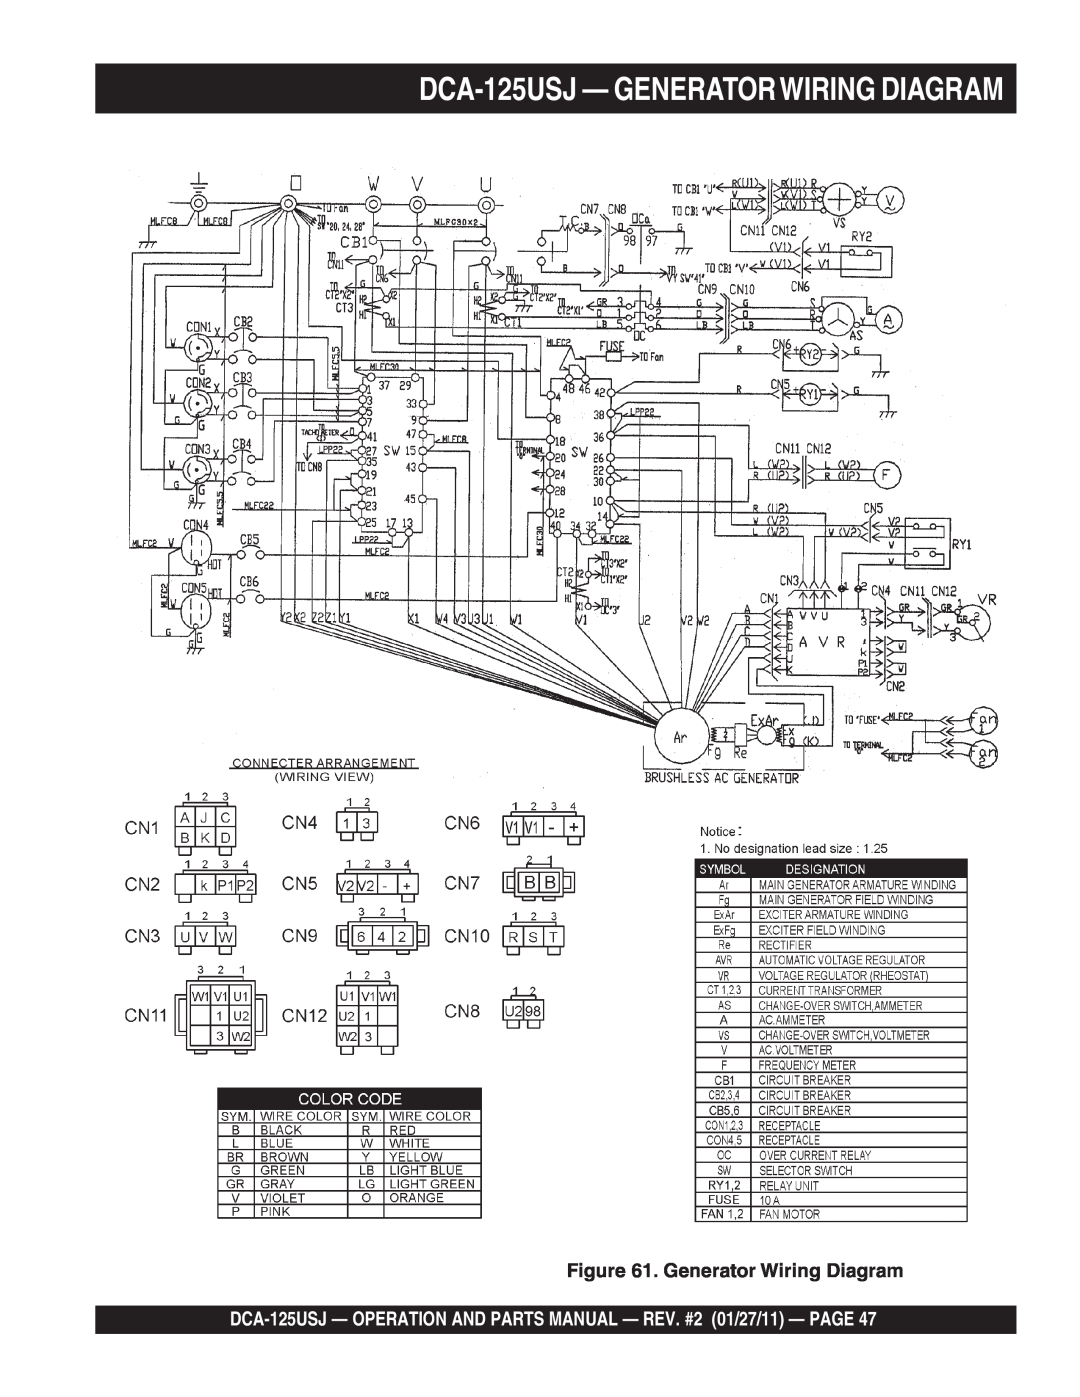 Multiquip DCA125USJ operation manual DCA-125USJ - GENERATORWIRING DIAGRAM, Generator Wiring Diagram 